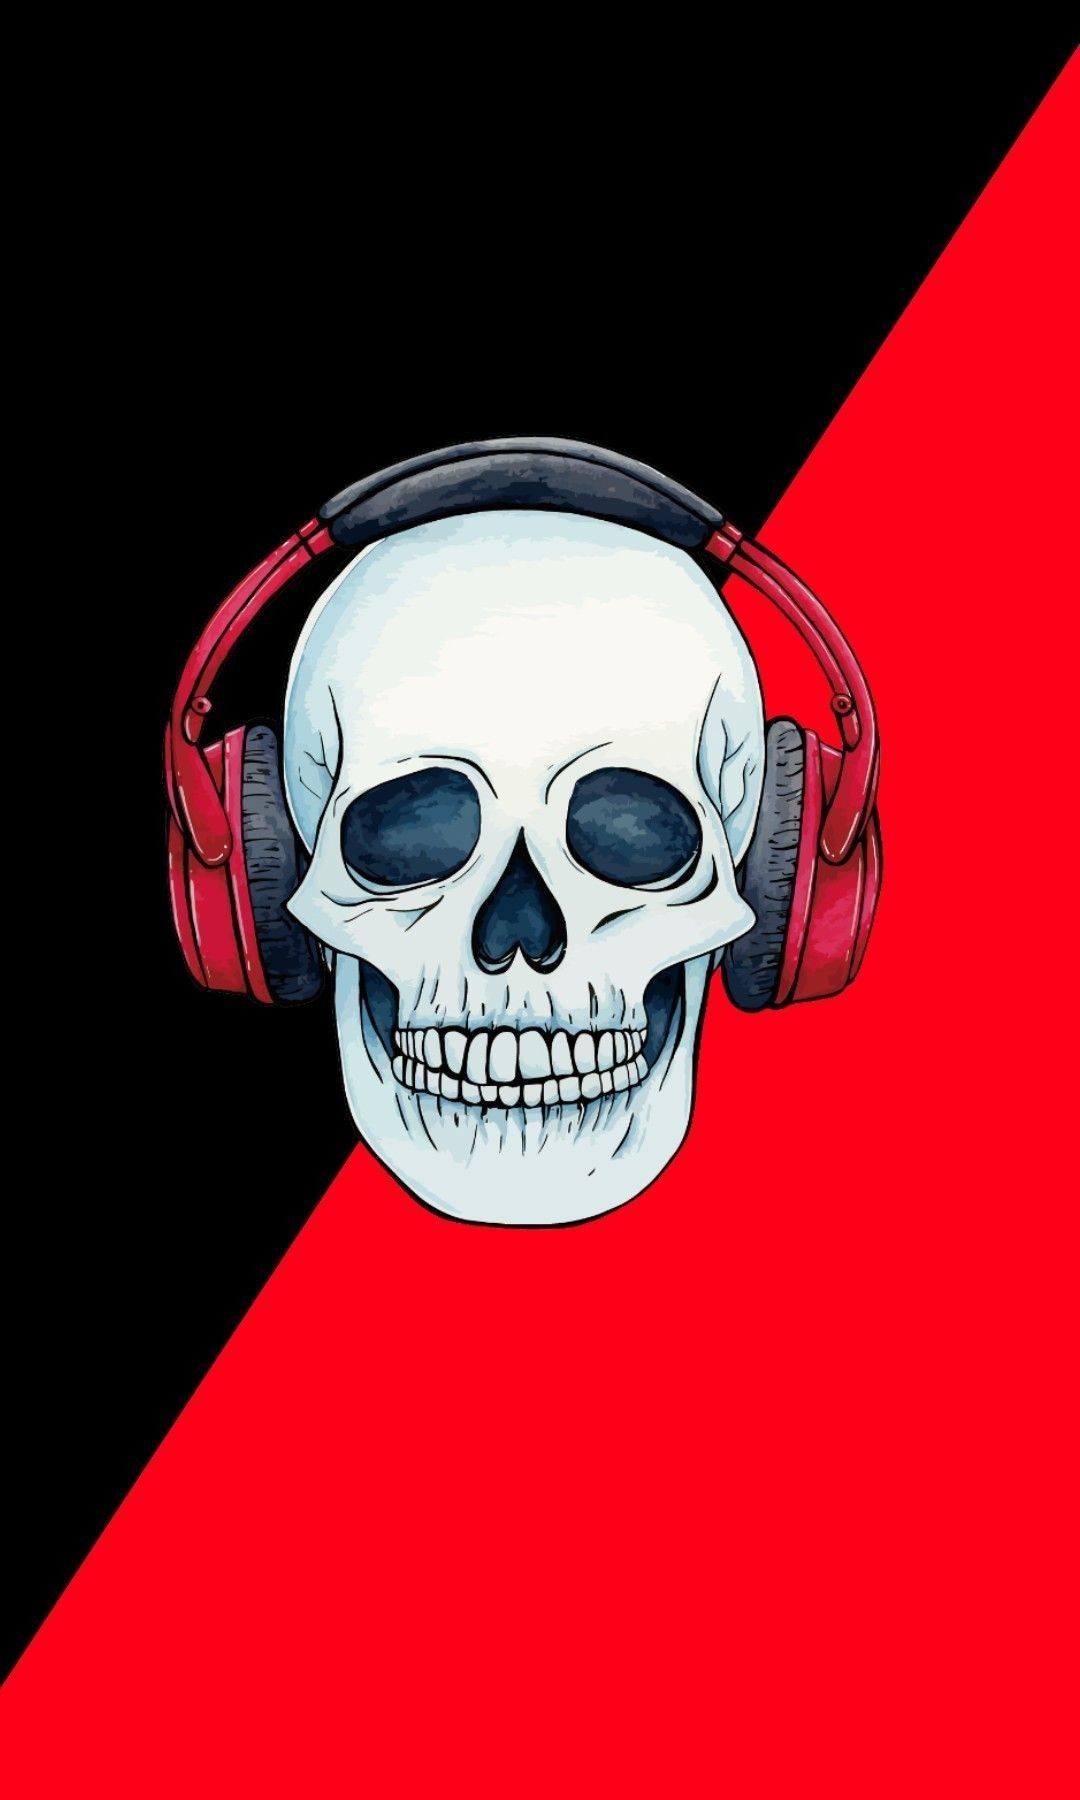 Music Skull. Skull wallpaper iphone, Skull wallpaper, Skull art